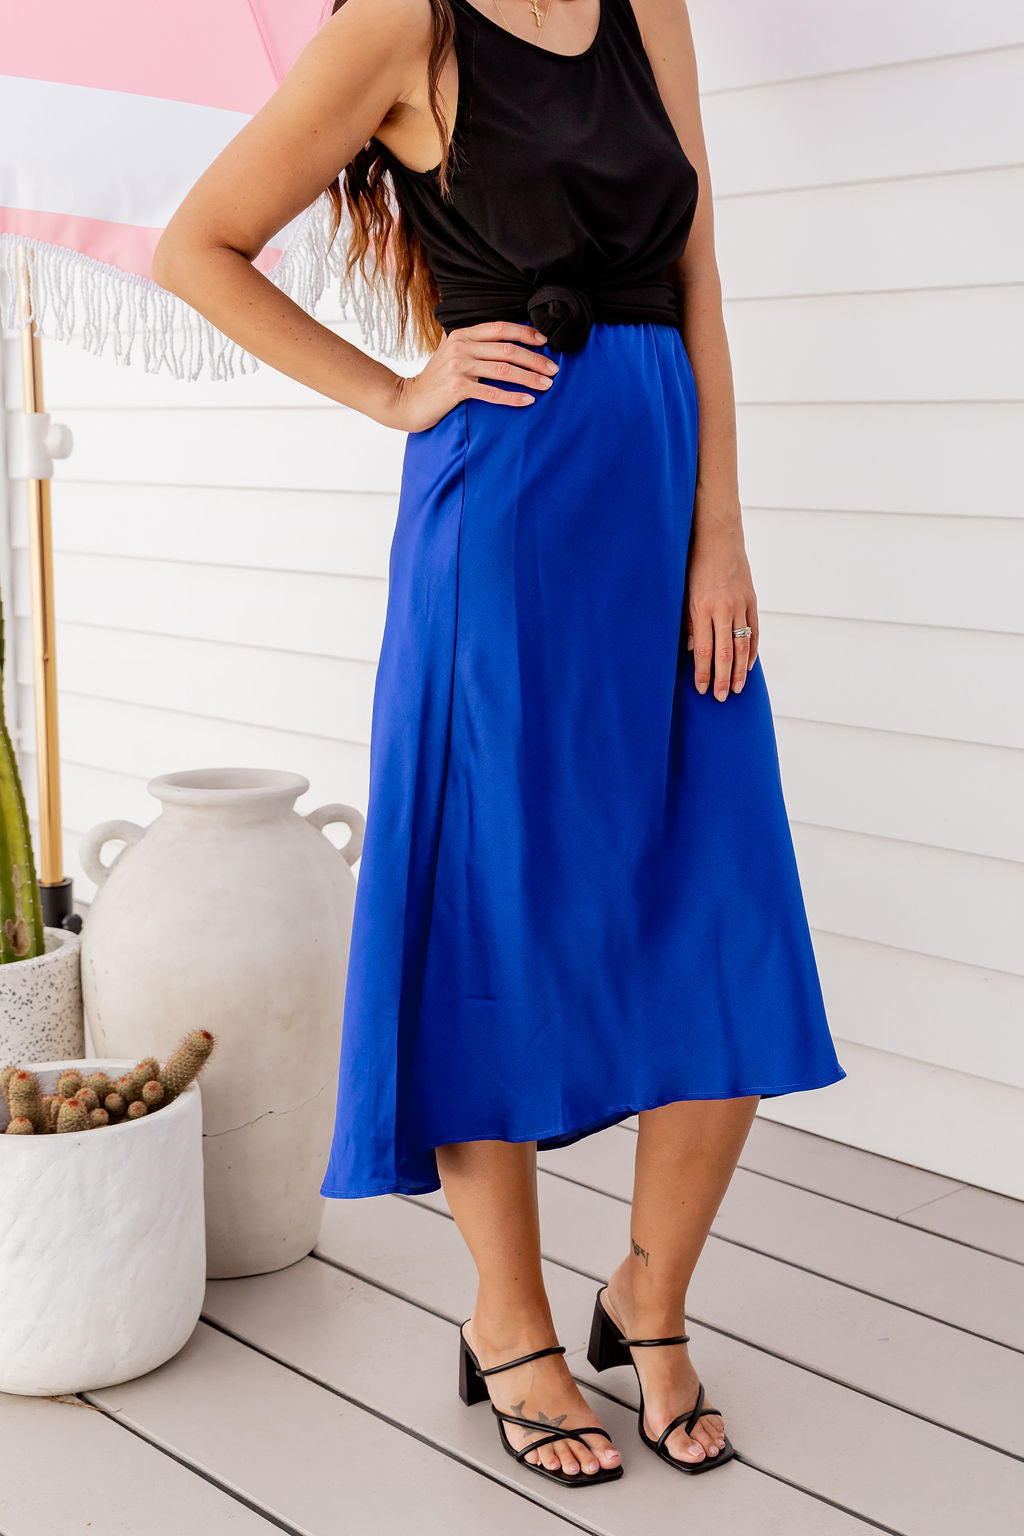 Celine Skirt in Blue